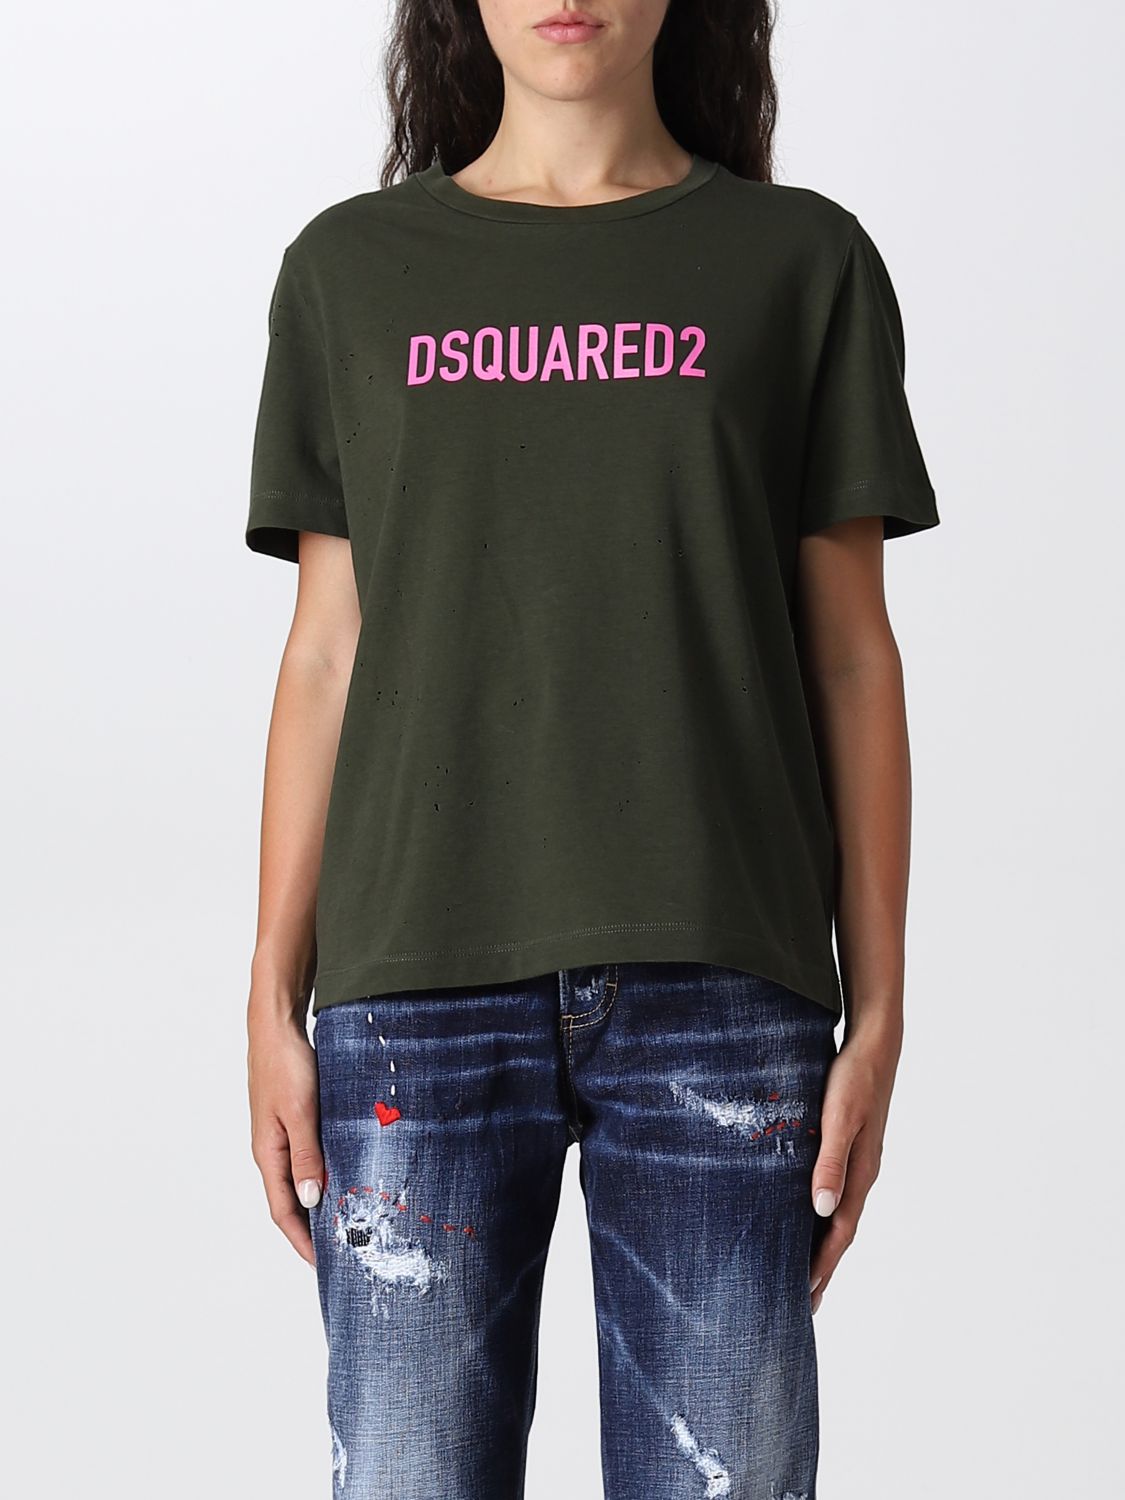 T-shirt Dsquared2: T-shirt Dsquared2 femme vert militaire 1